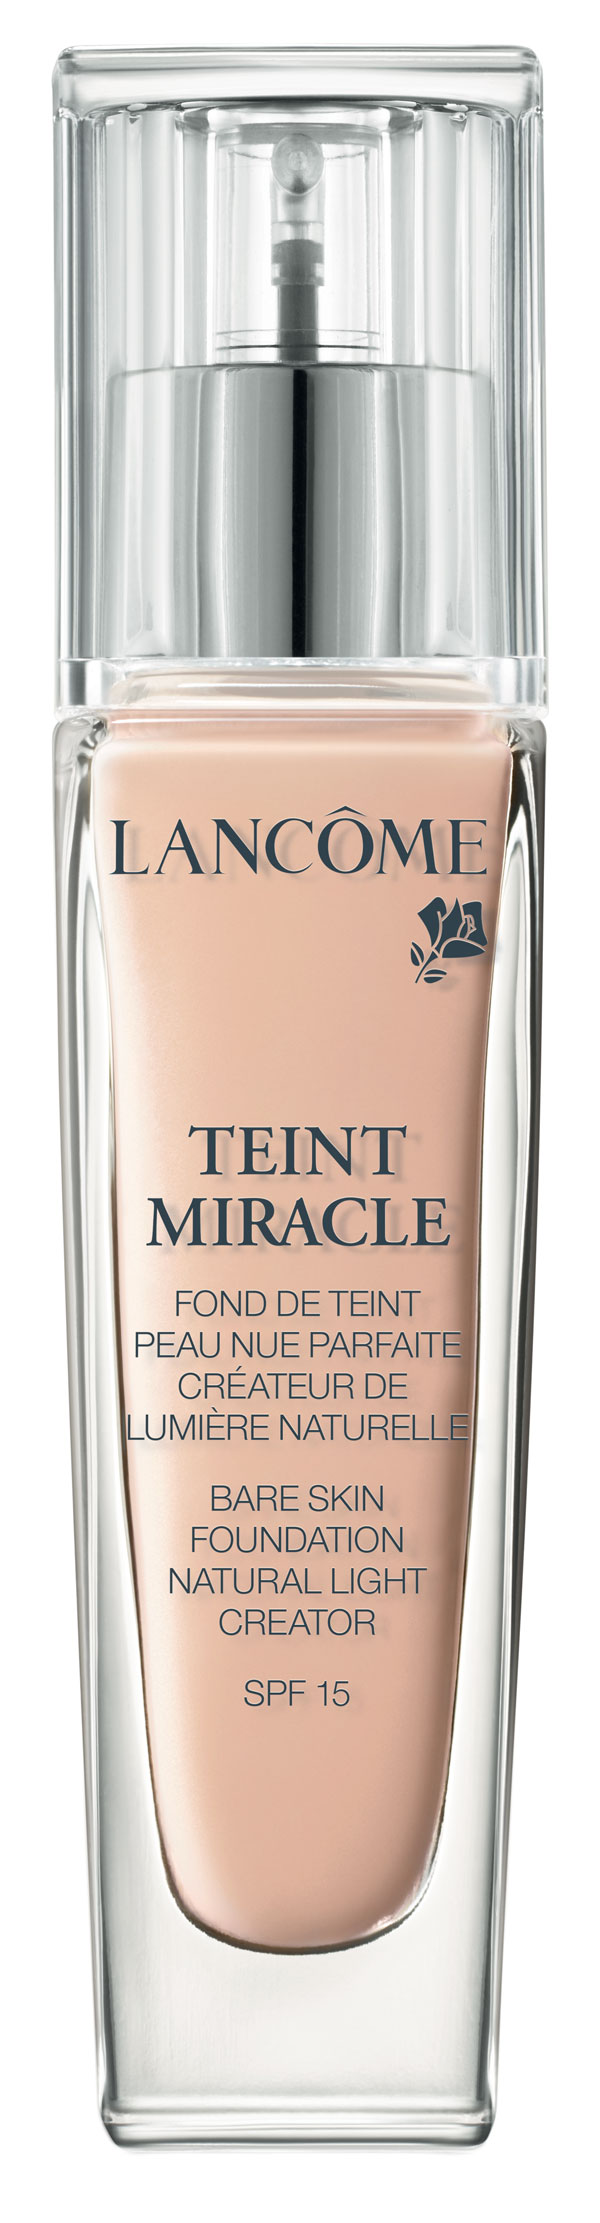 Teint-Miracle-créateur-de-lumiere-naturelle-03-Beige-Diaphane-Lancôme.-492-DH.-En-parfumeries